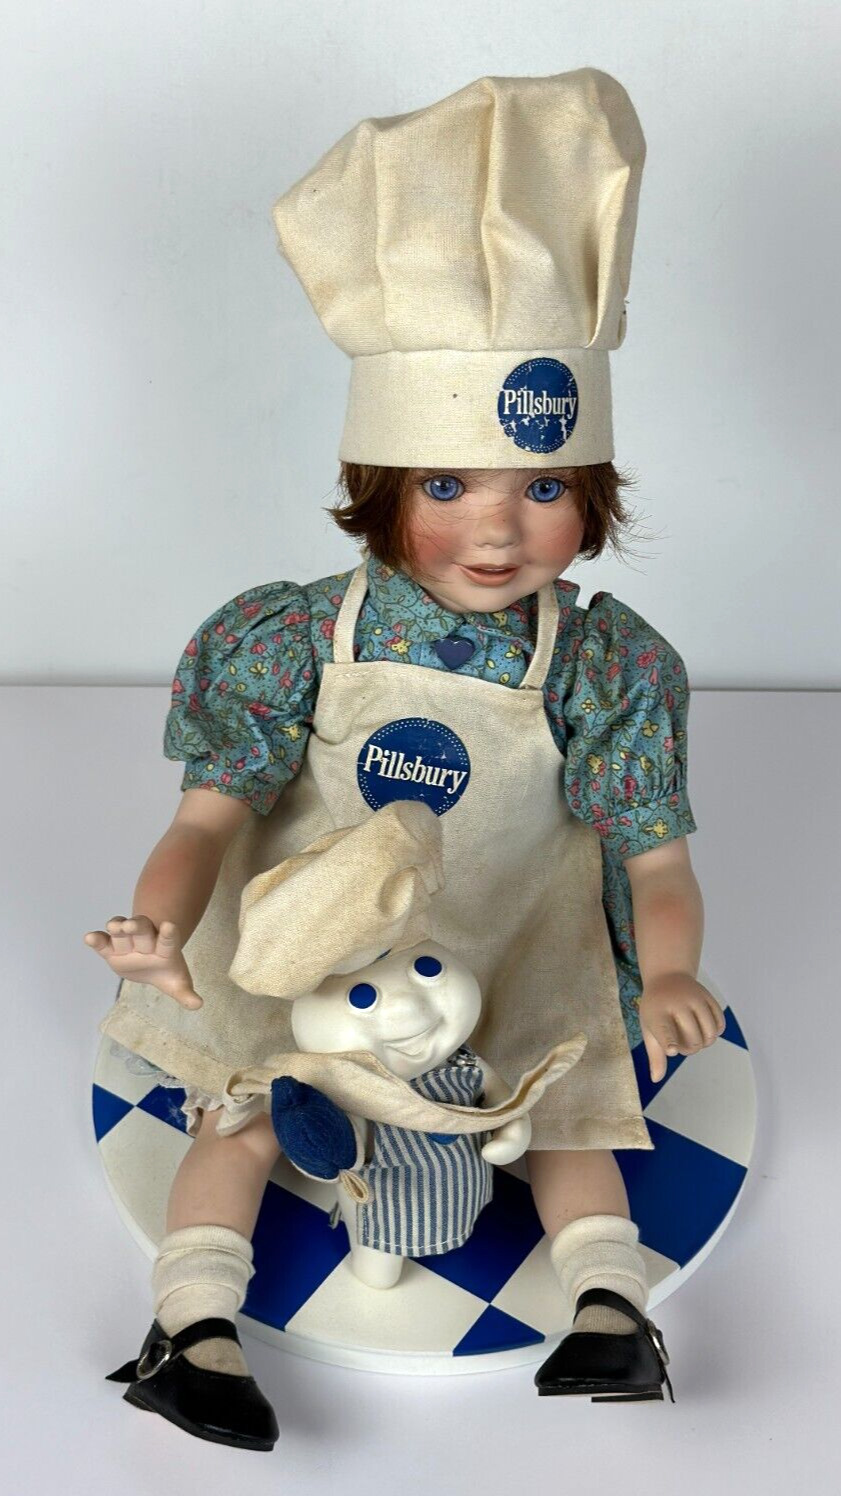 Pillsbury Doughboy Little Baking Buddies Doll Karen Scott Danbury Mint